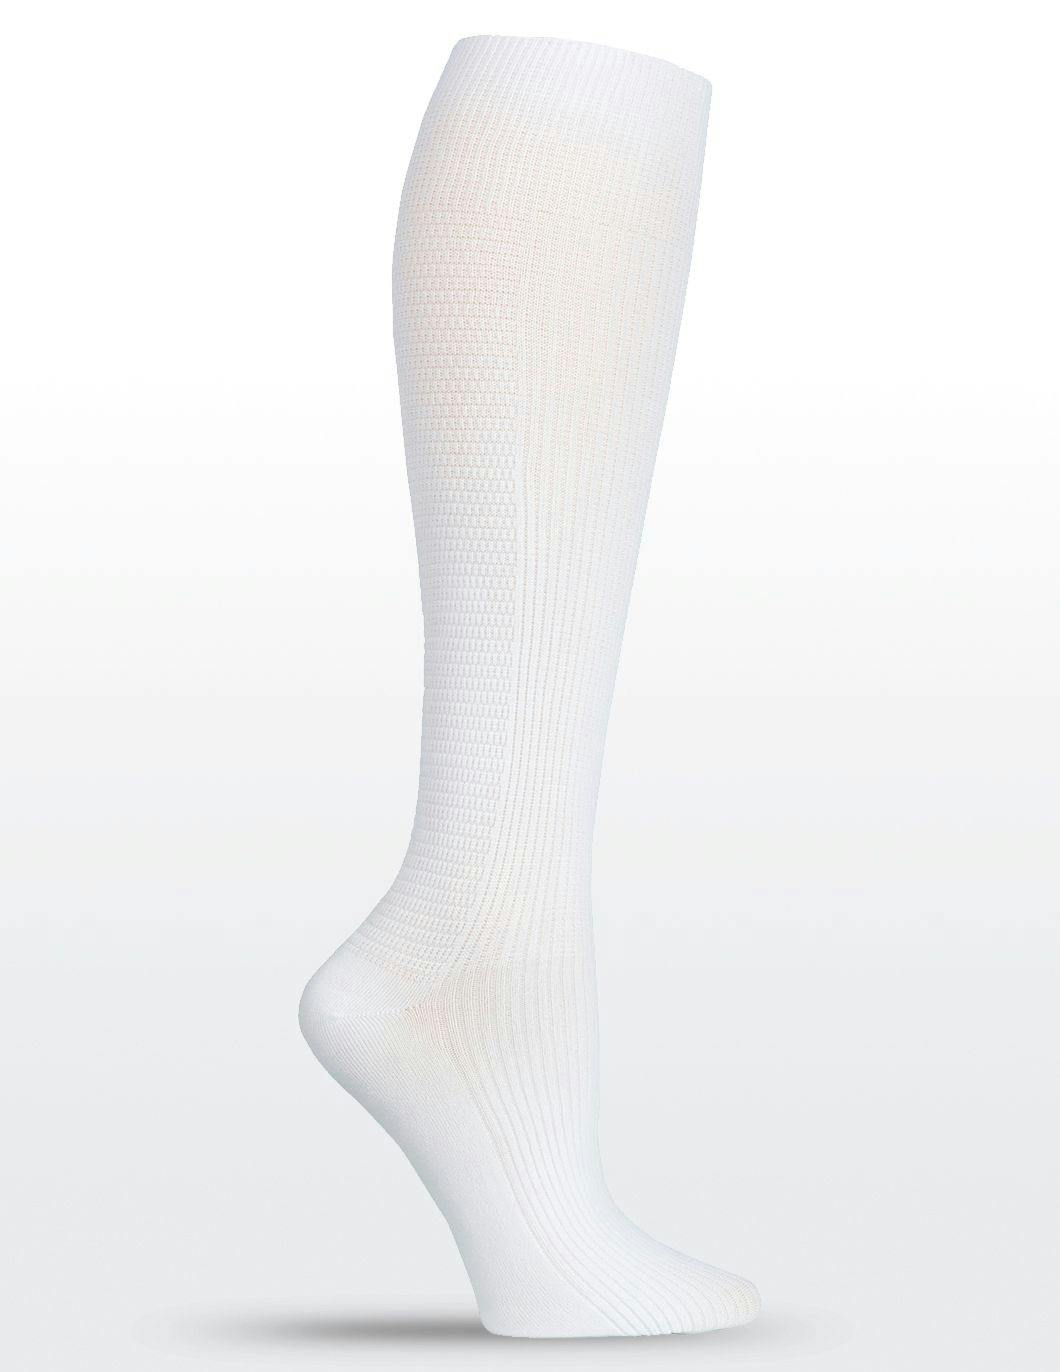 mens-compression-socks-white